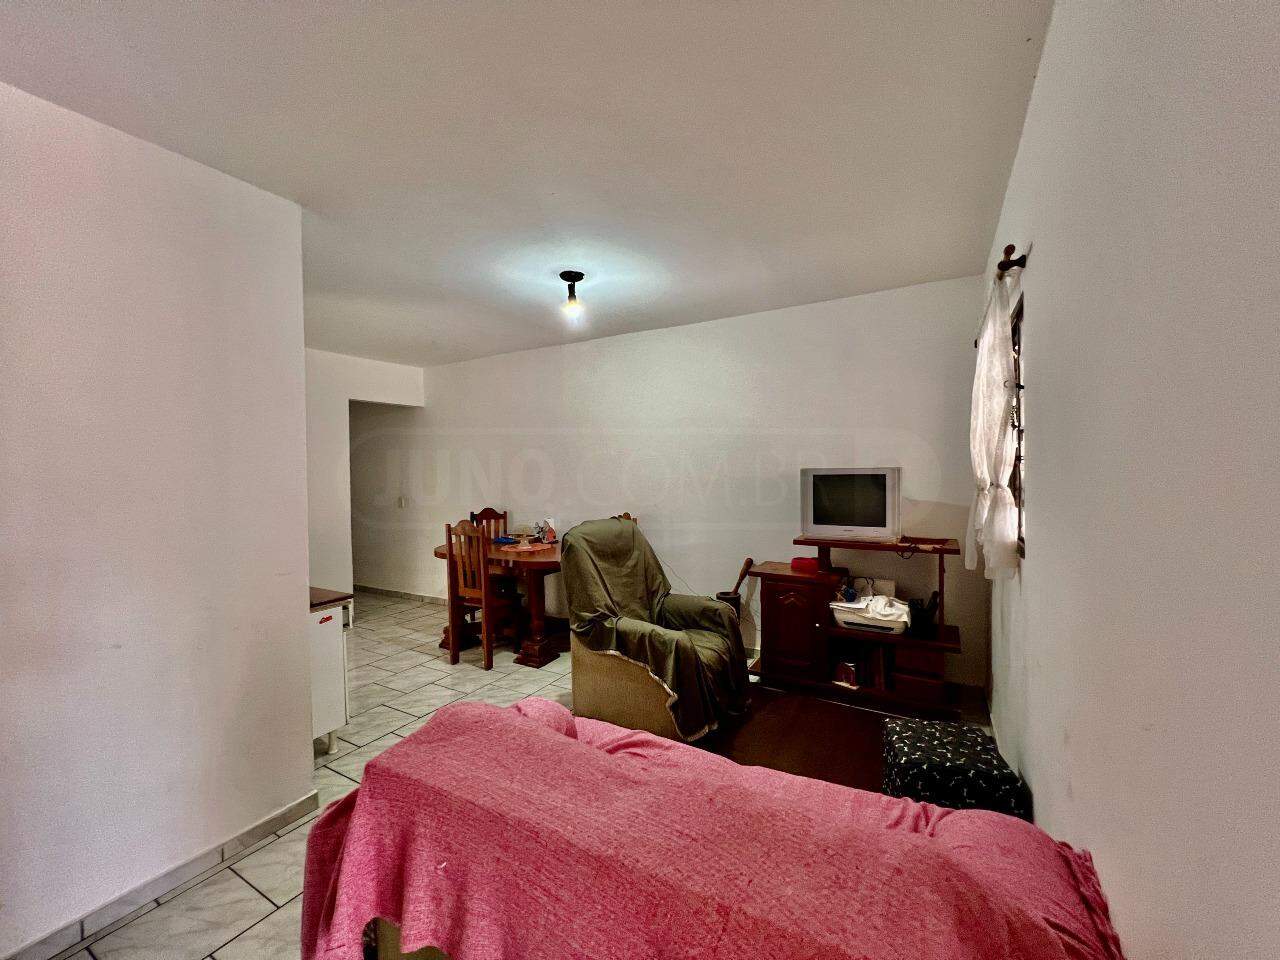 Casa à venda, 3 quartos, 2 vagas, no bairro Nova América em Piracicaba - SP